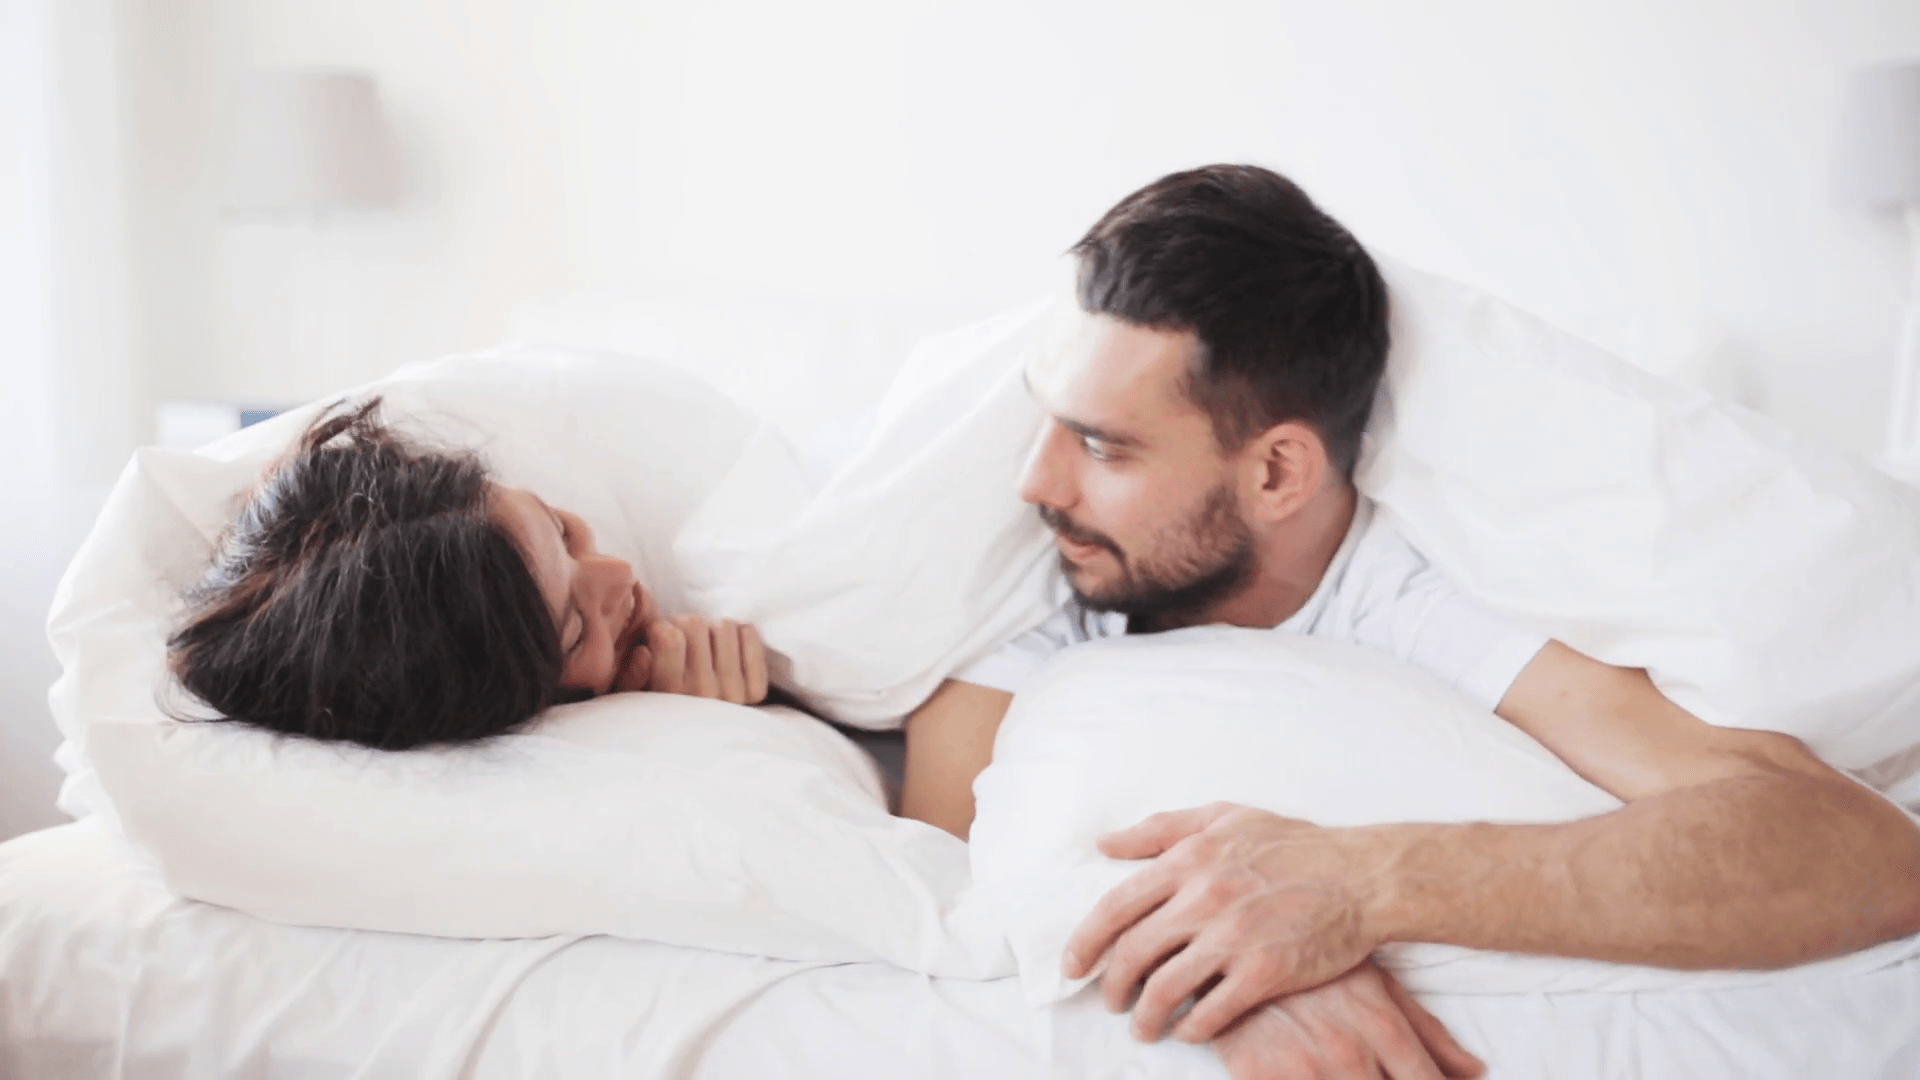 3 sekretne klucze do satysfakcjonującego seksu nawet po latach małżeństwa